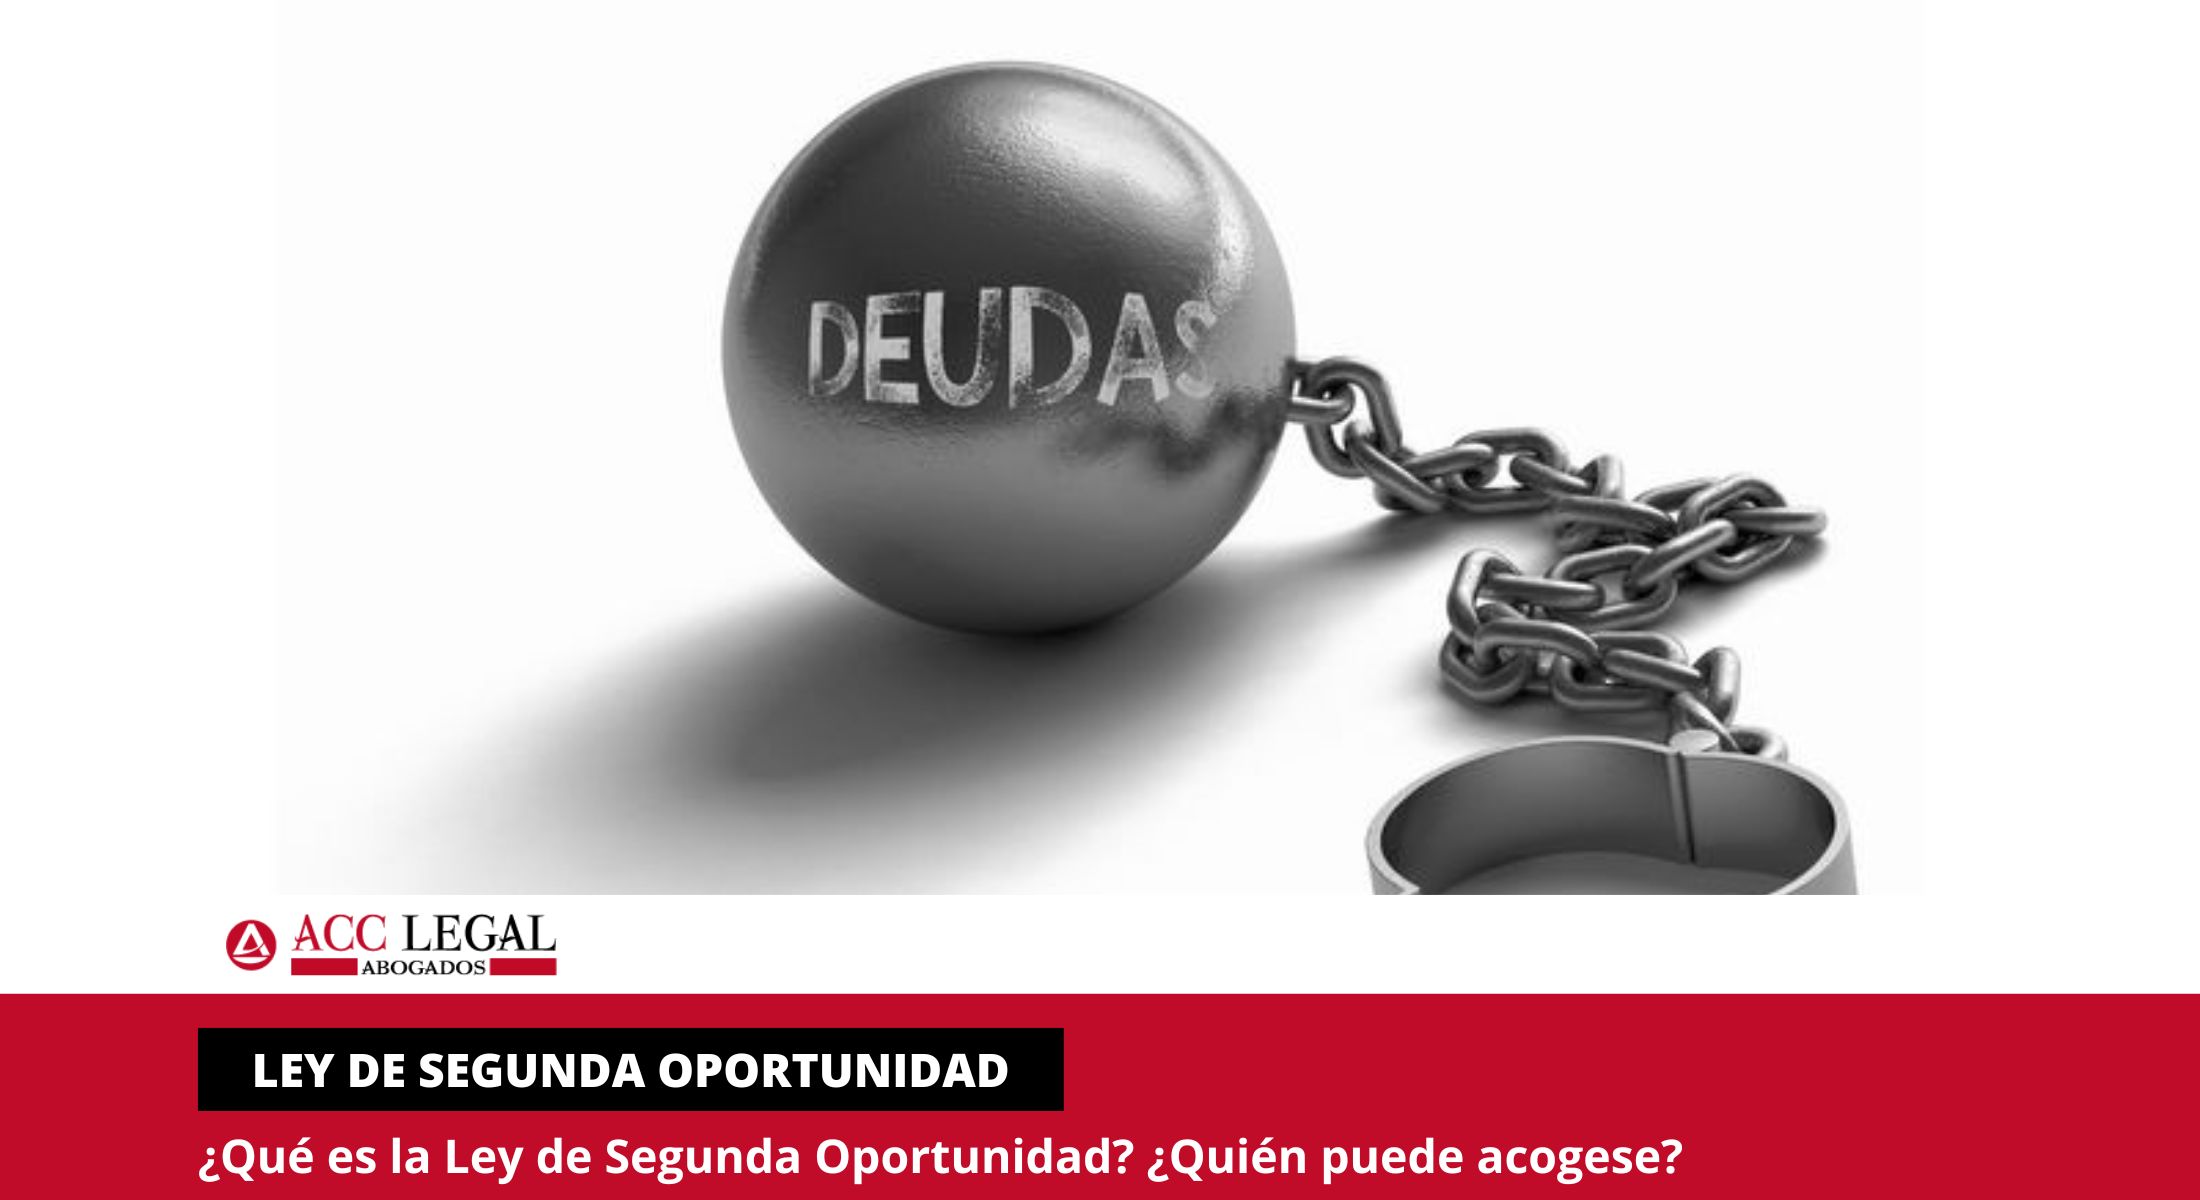 ¿Qué es la Ley de Segunda Oportunidad? - Murcia | ACC LEGAL ABOGADOS